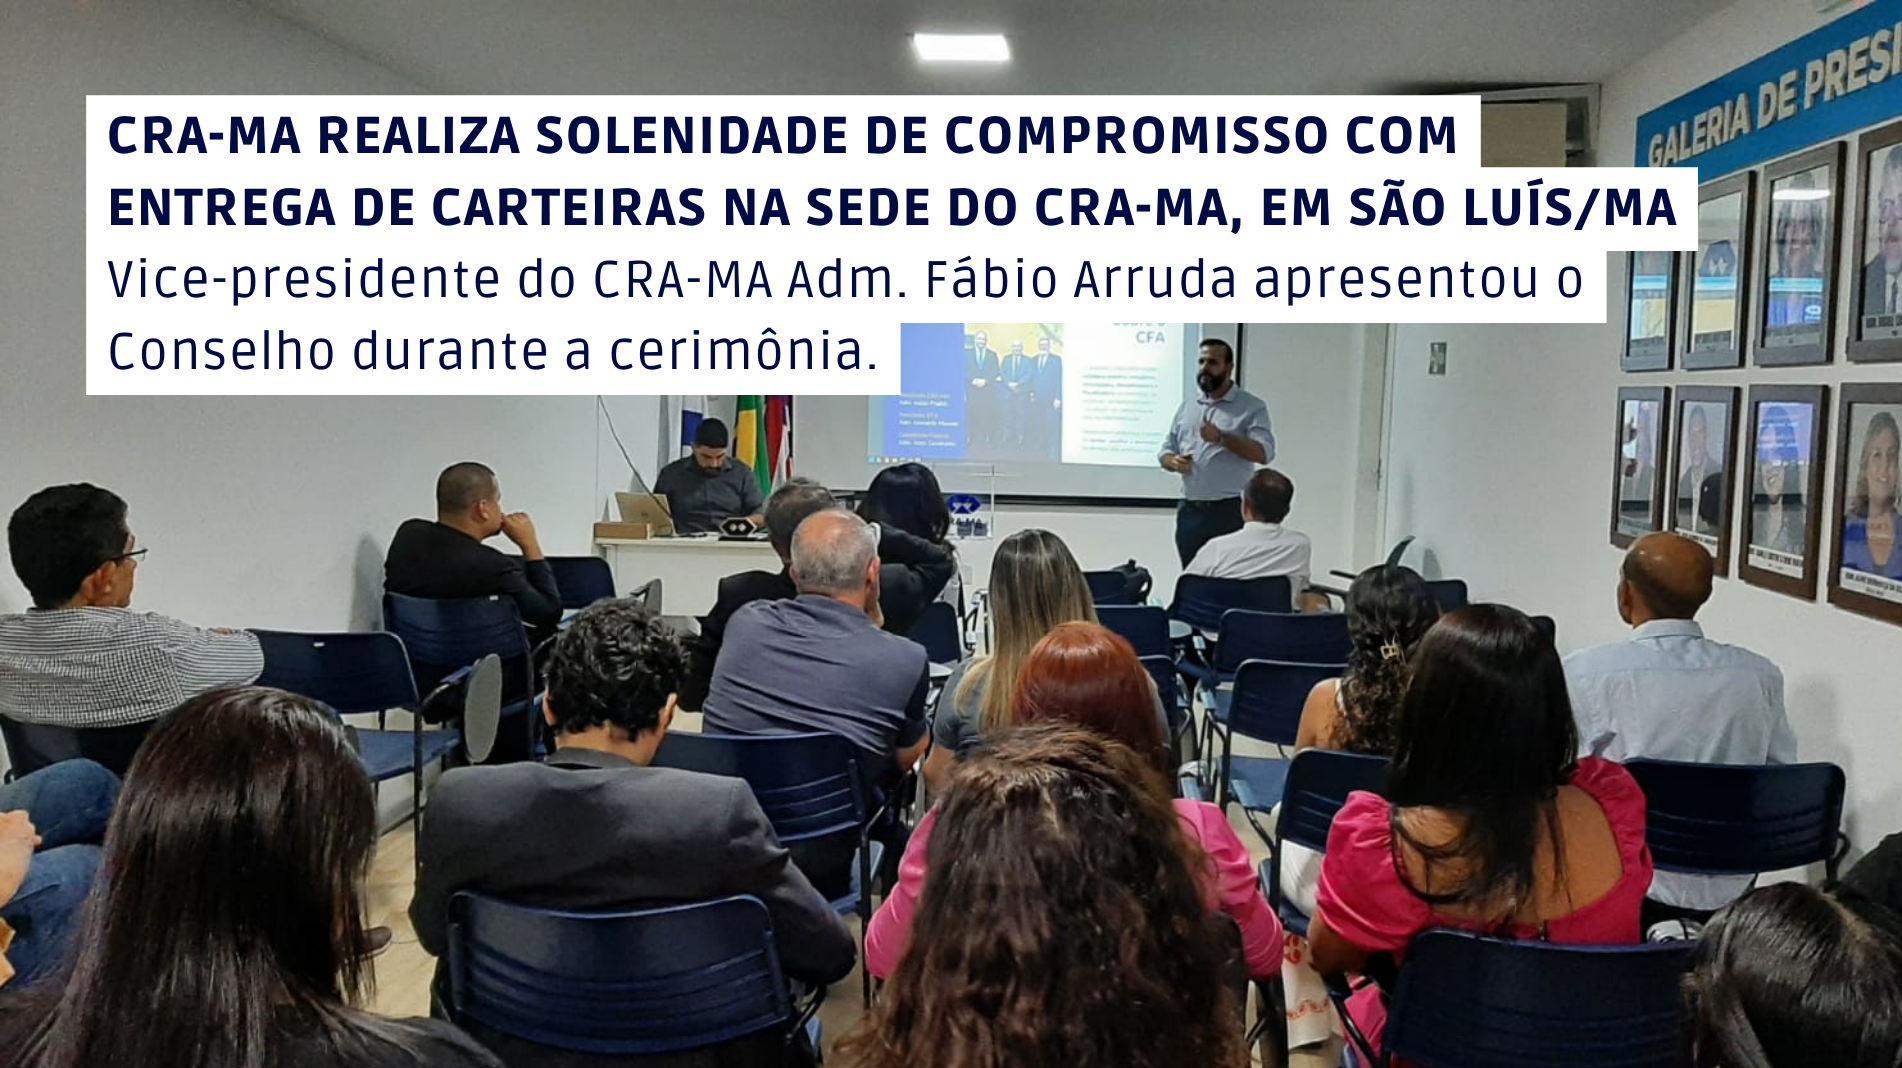 You are currently viewing Solenidade de Compromisso com entrega de carteiras é realizada na sede do CRA-MA, em São Luís/MA